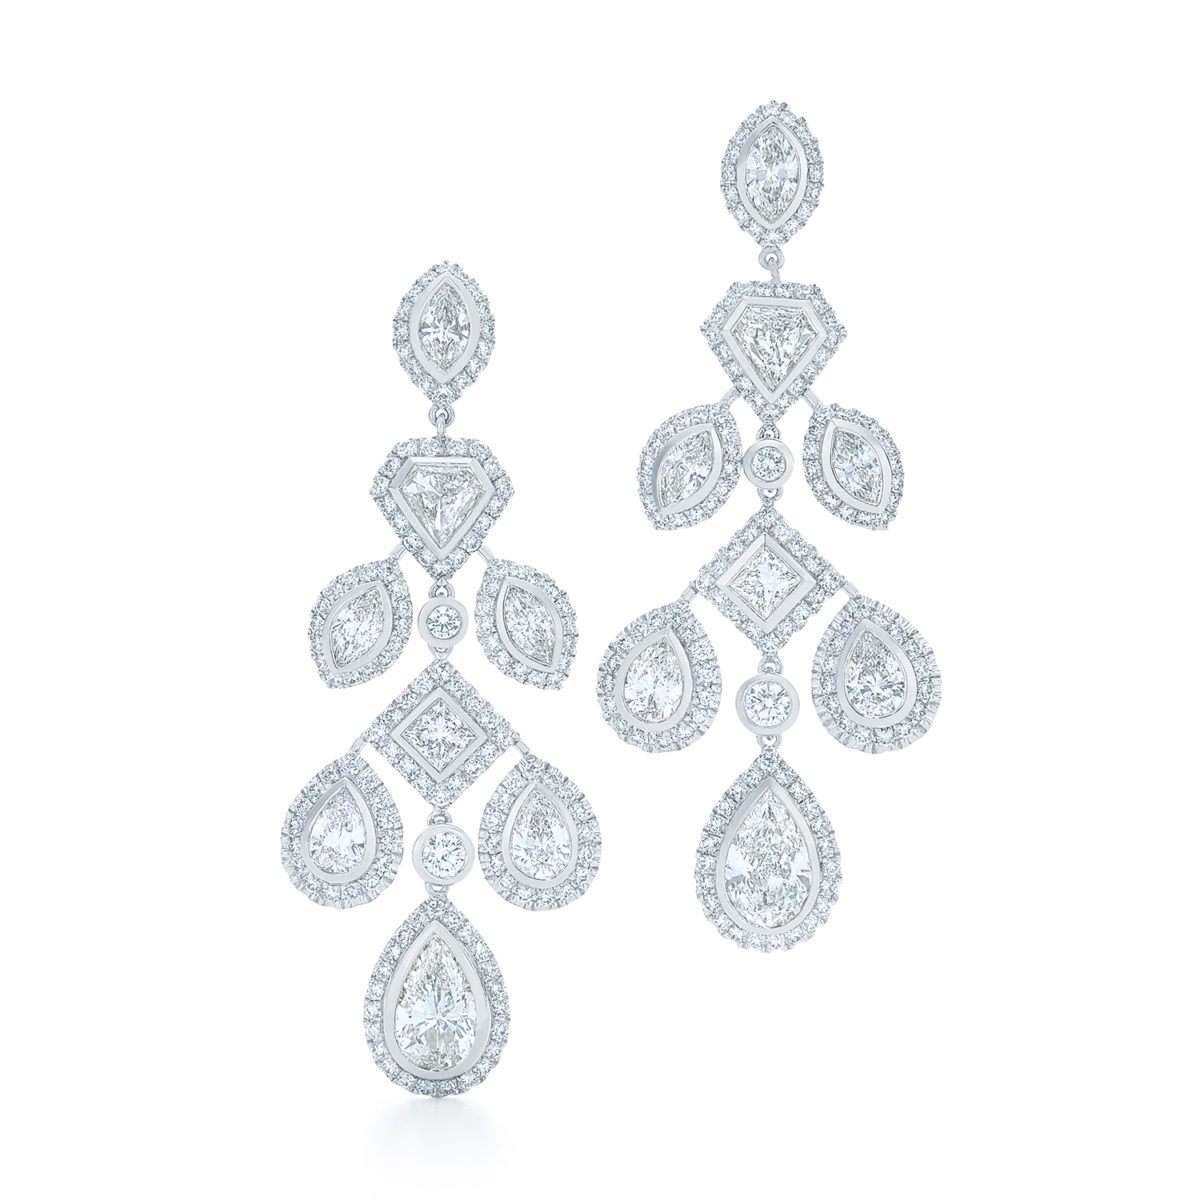 Kwiat Silhouette Diamond Earrings